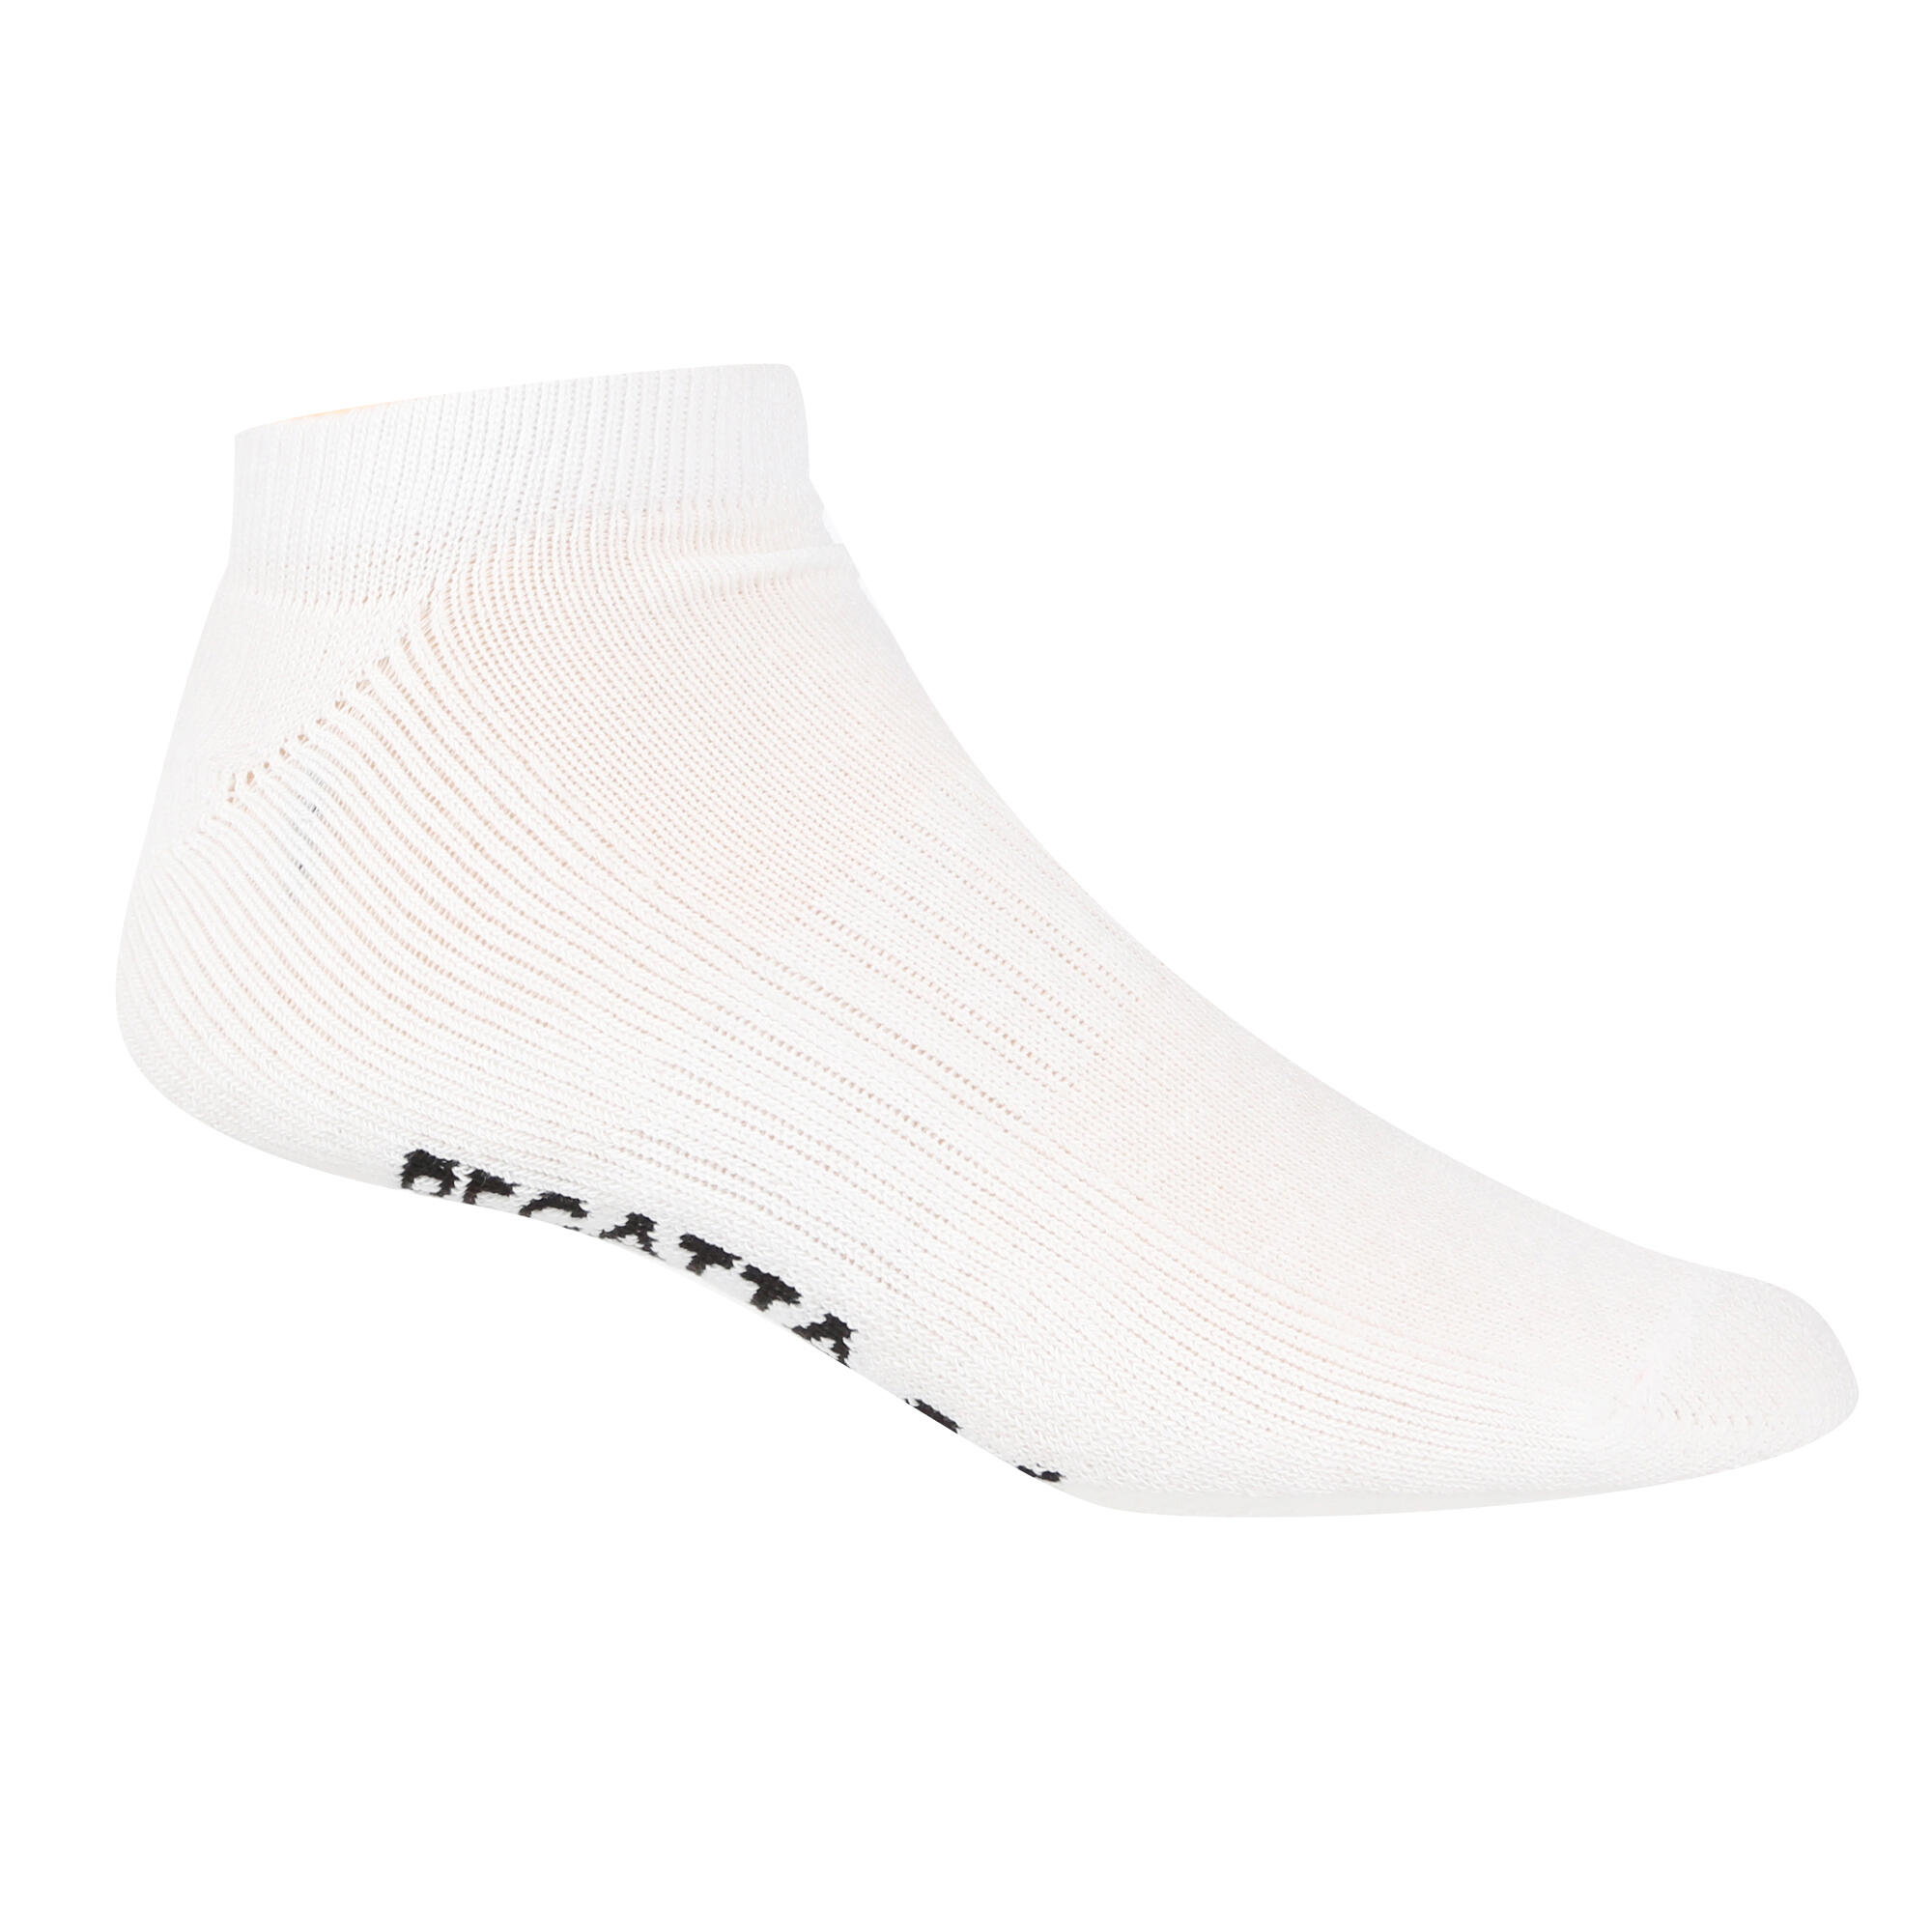 Unisex Adult Trainer Socks (Pack of 5) (White) 3/4